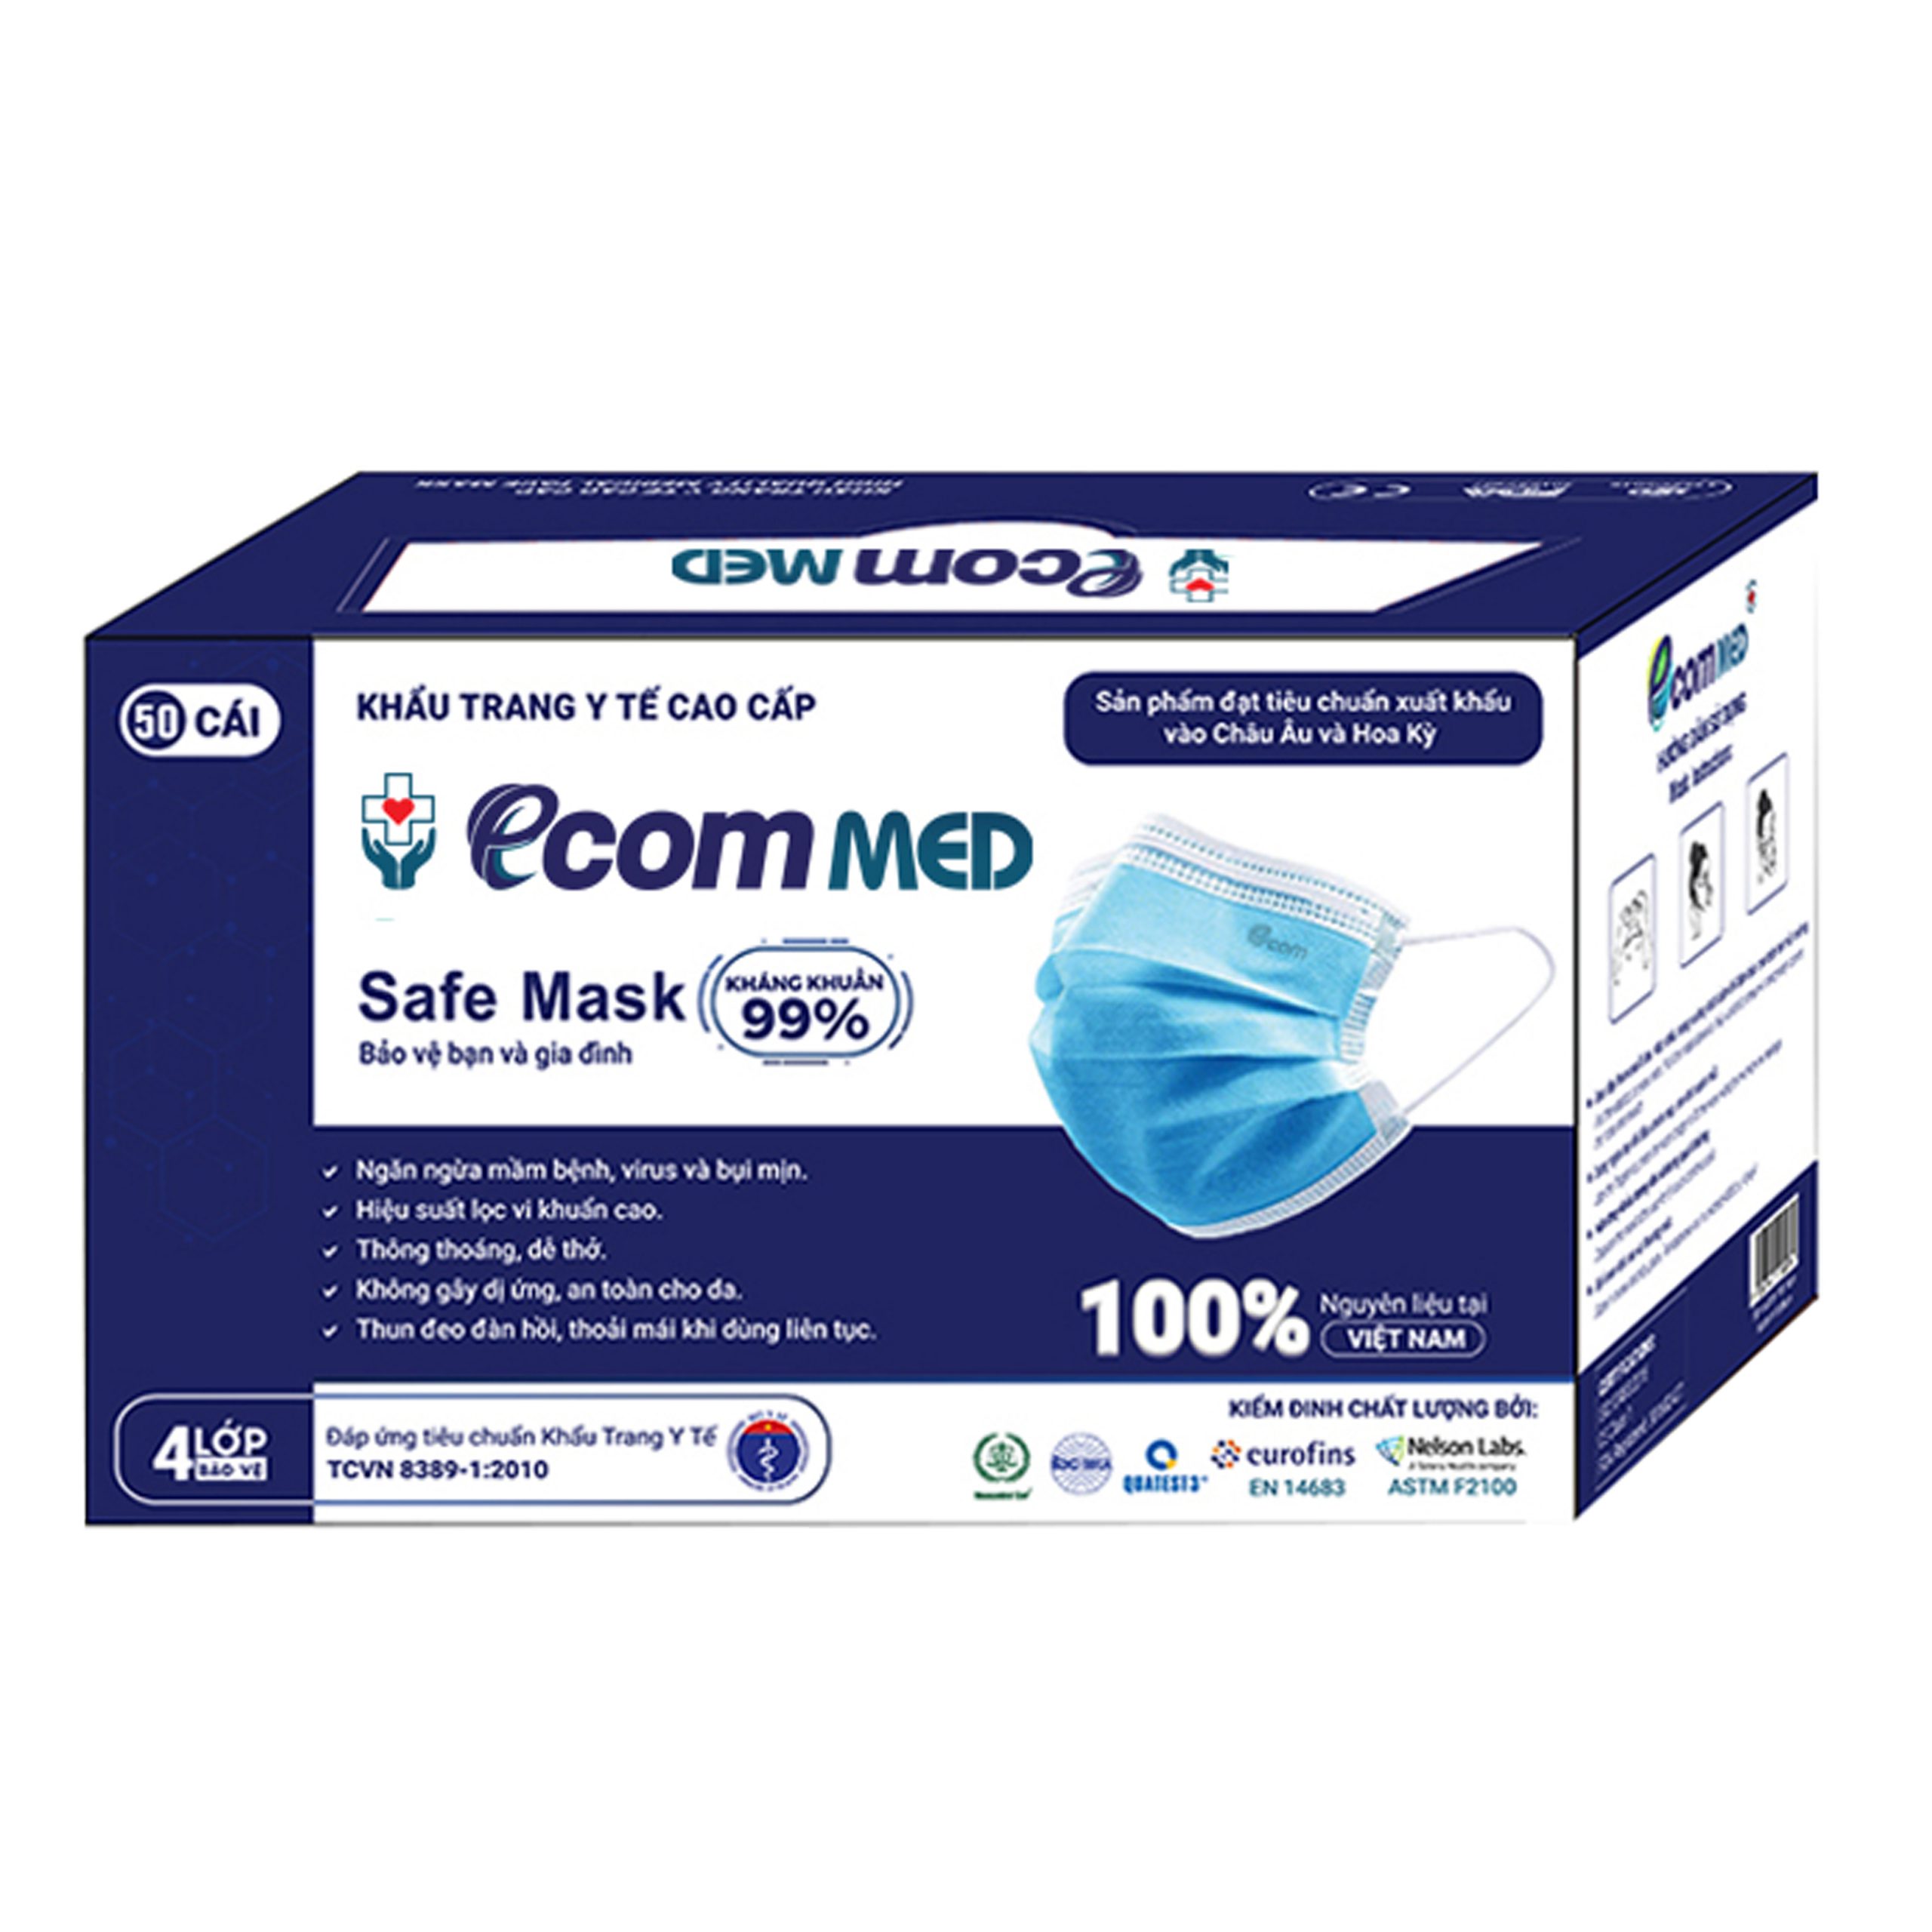 Tính năng kháng khuẩn của khẩu trang Ecom Med là bao nhiêu phần trăm?
